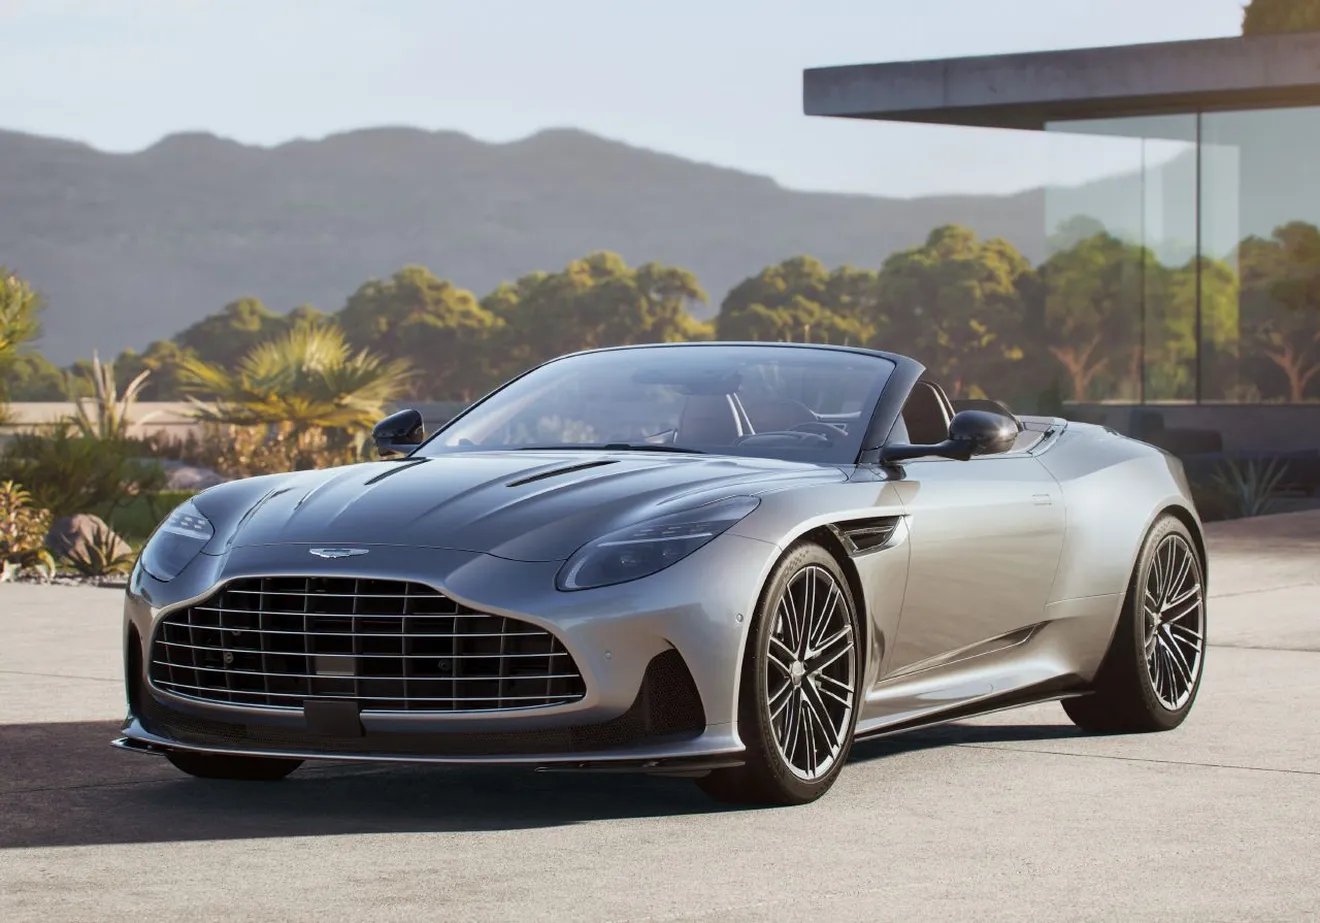 El nuevo Aston Martin DB12 Volante debuta con suma elegancia, un descapotable tan tecnológico como rápido con casi 700 CV 